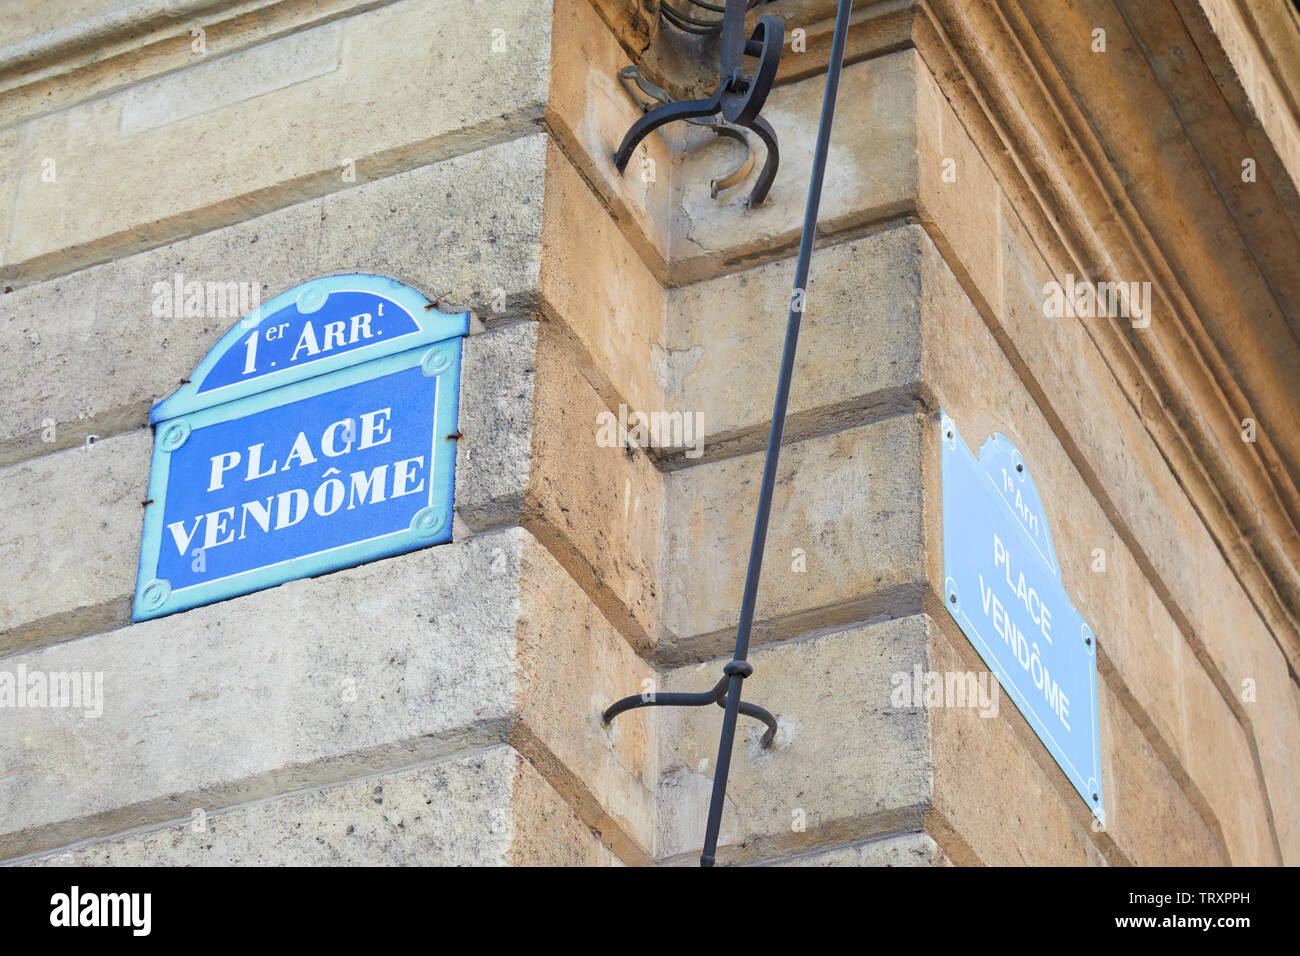 La famosa Place Vendome y esquina calle signo en París, Francia Foto de stock